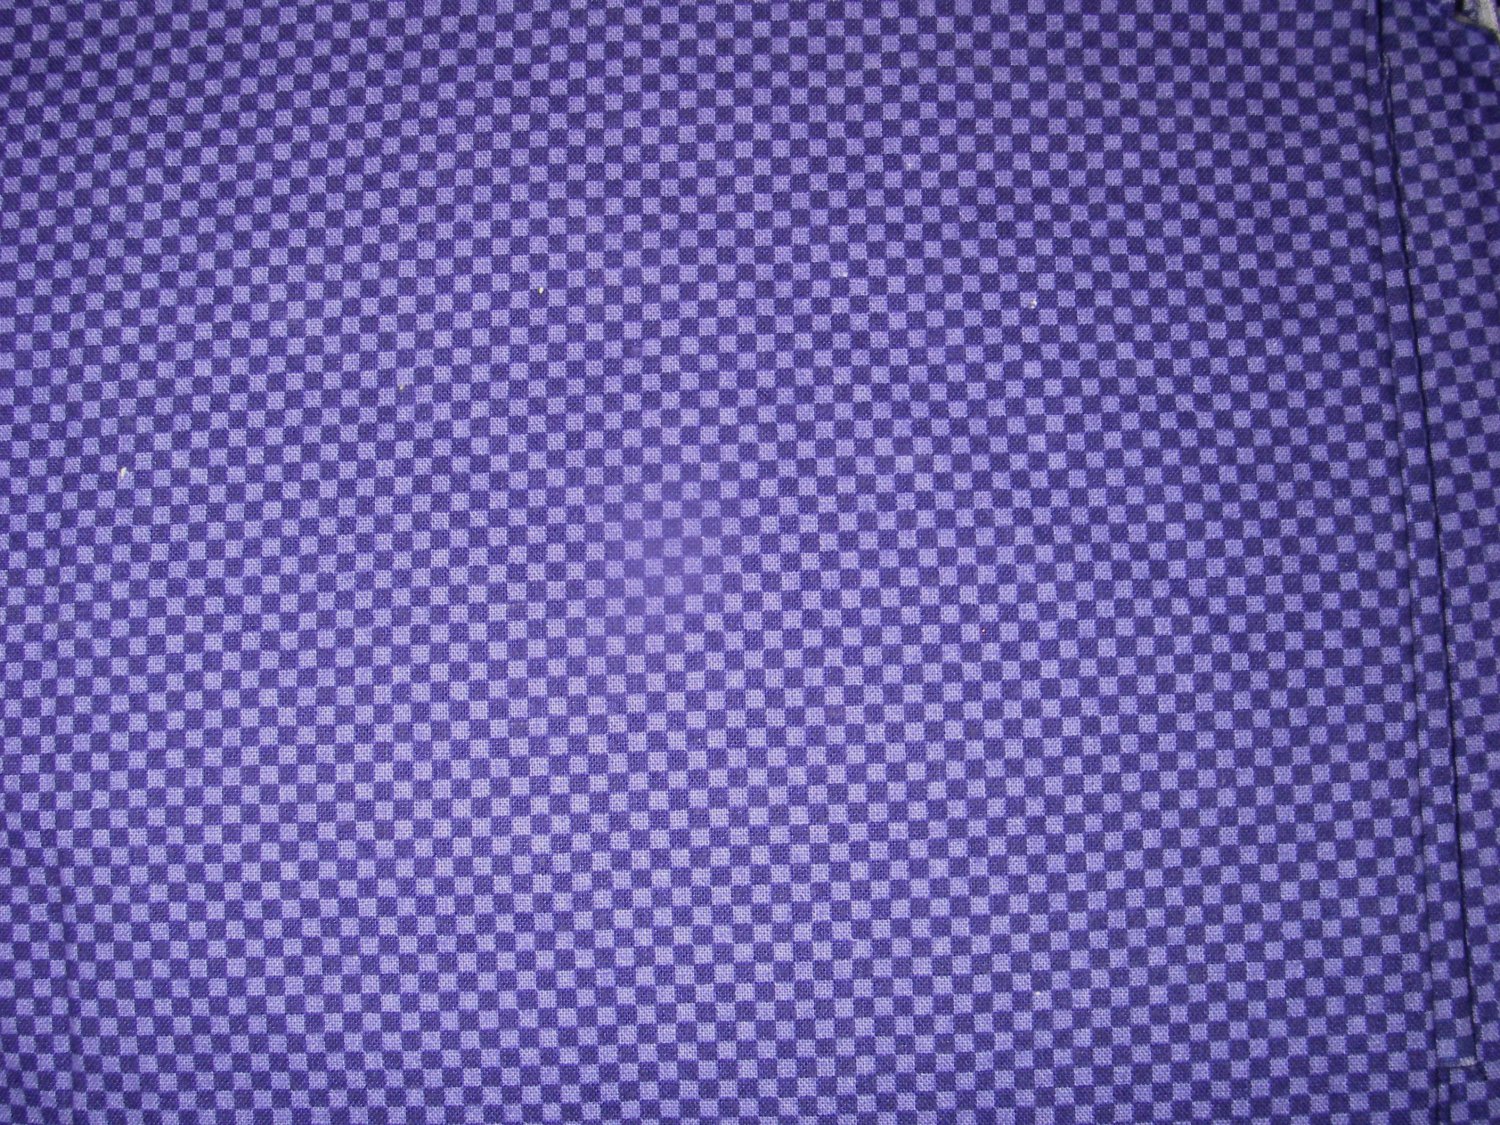 22  inches - Purple checkerboard fabric - Purple, dark purple